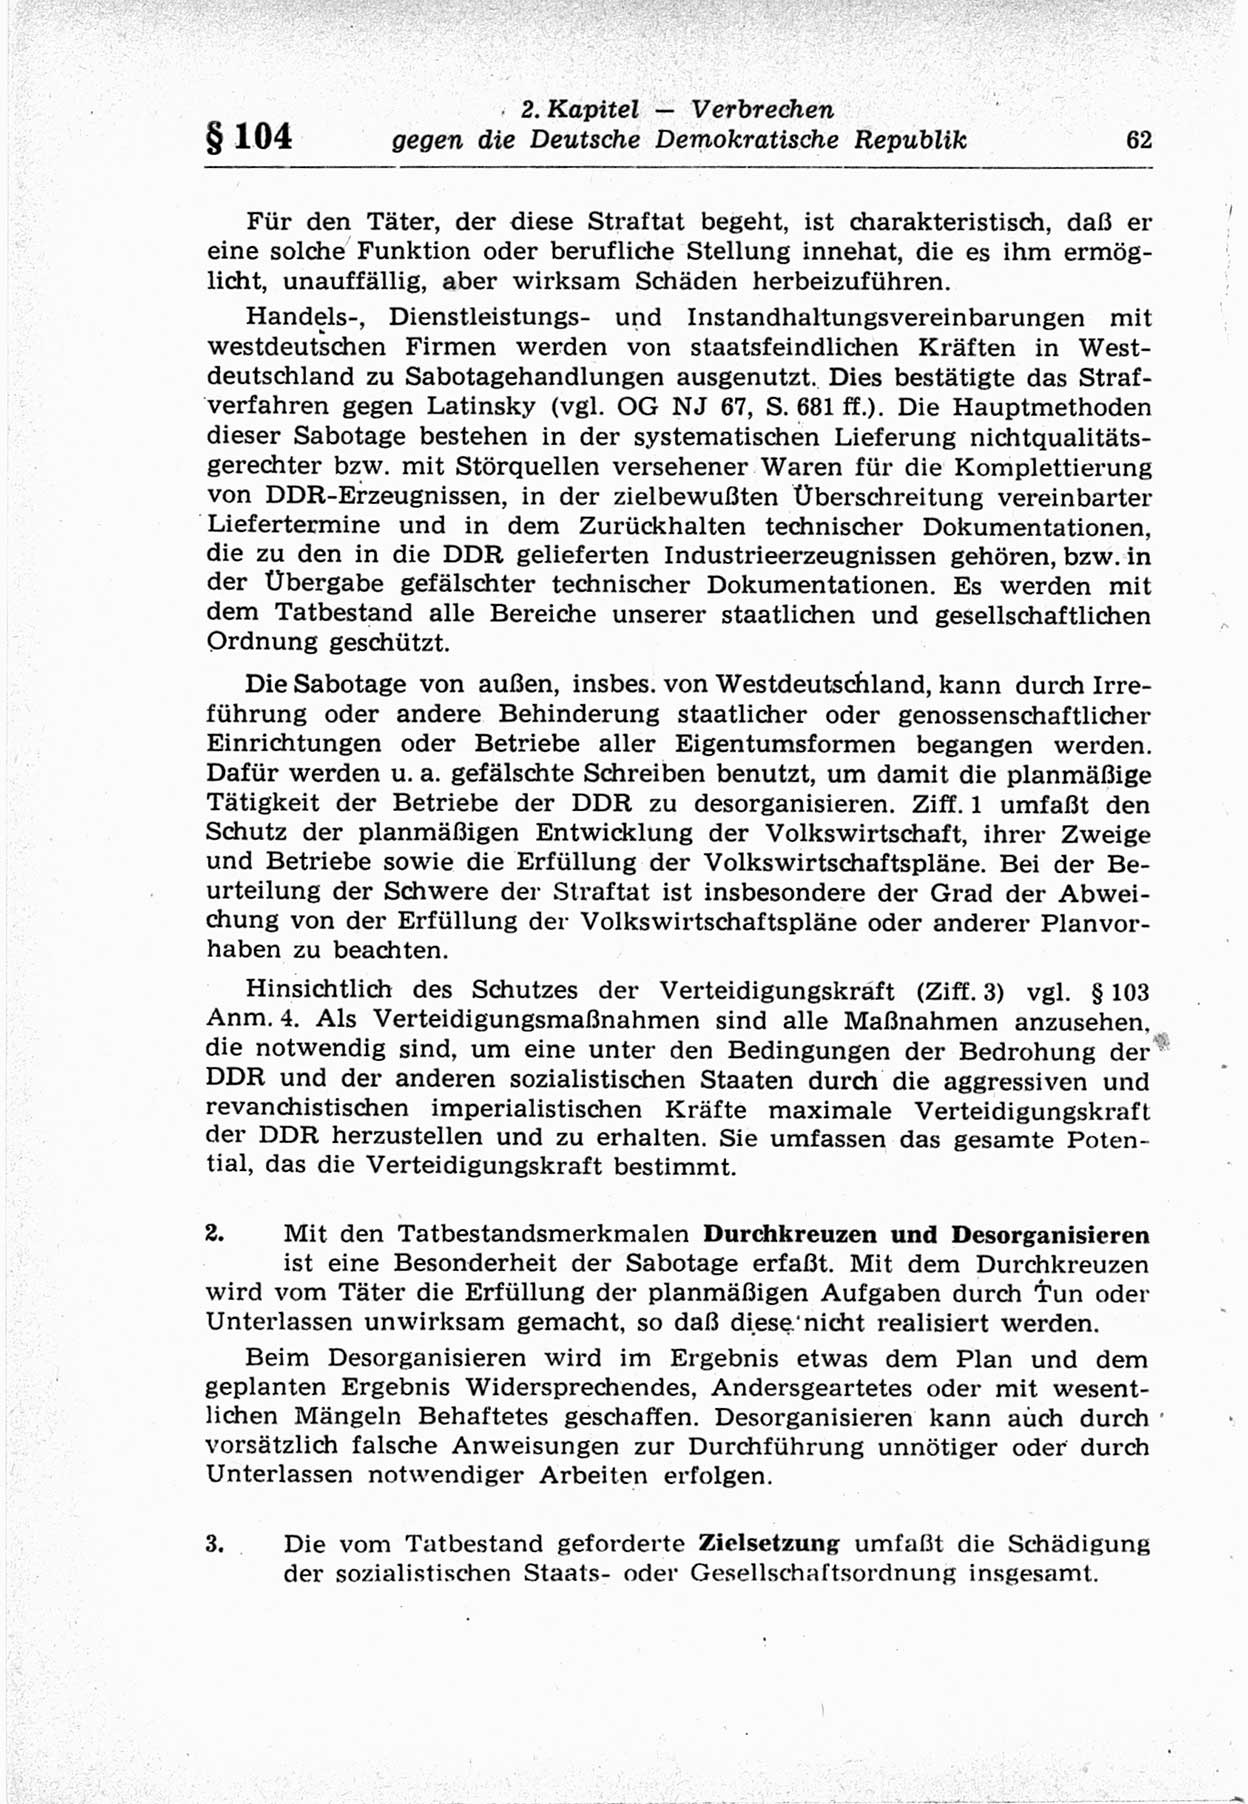 Strafrecht der Deutschen Demokratischen Republik (DDR), Lehrkommentar zum Strafgesetzbuch (StGB), Besonderer Teil 1969, Seite 62 (Strafr. DDR Lehrkomm. StGB BT 1969, S. 62)